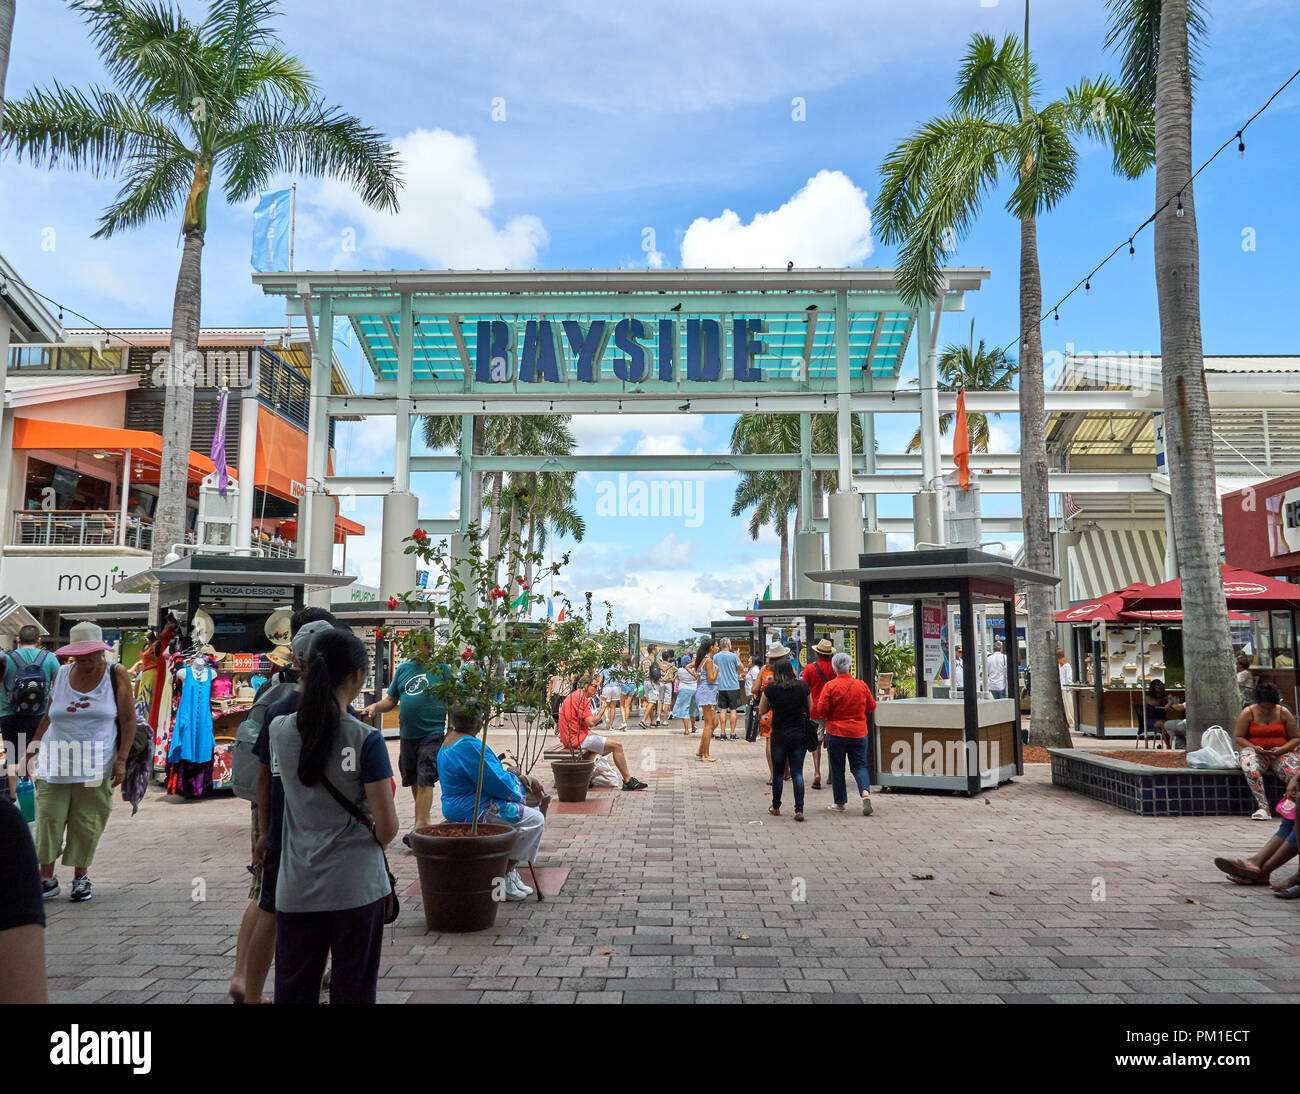 MIAMI, USA - 22 août 2018 : Bayside Marketplace sign in Miami. Bayside Marketplace est de deux étages du centre commercial en plein air situé dans le centre-ville de Mia Banque D'Images